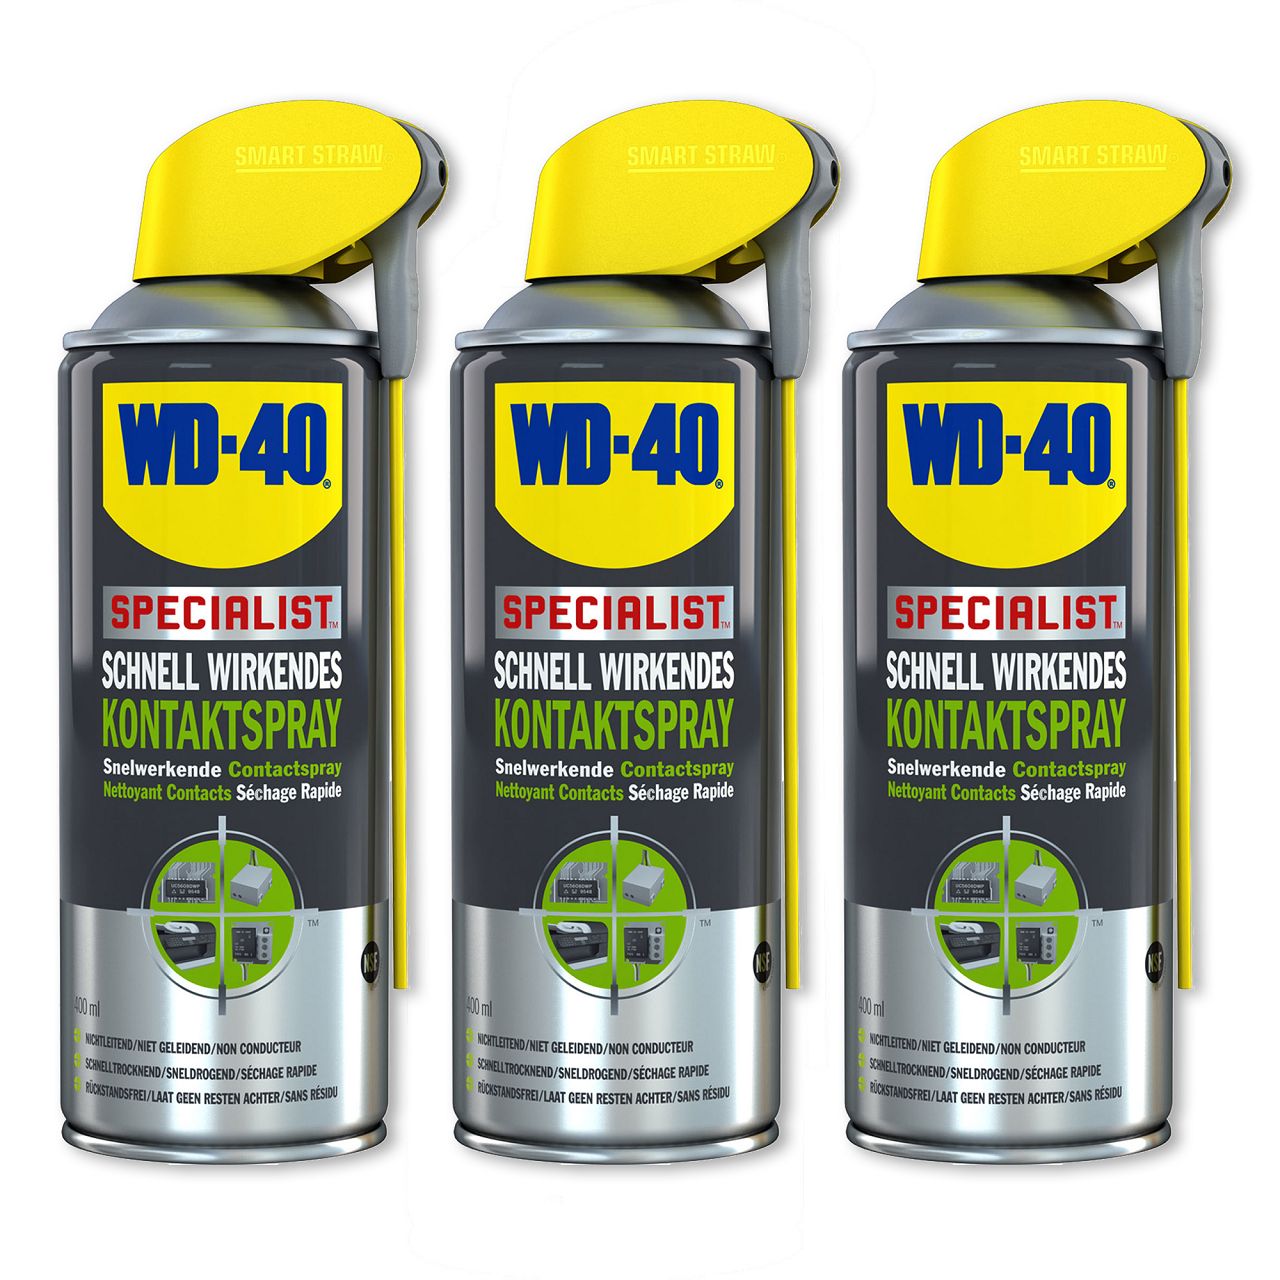 WD-40 SPECIALIST 49368 Kontaktspray Kontaktreiniger Elektronikspray 3x 400ml